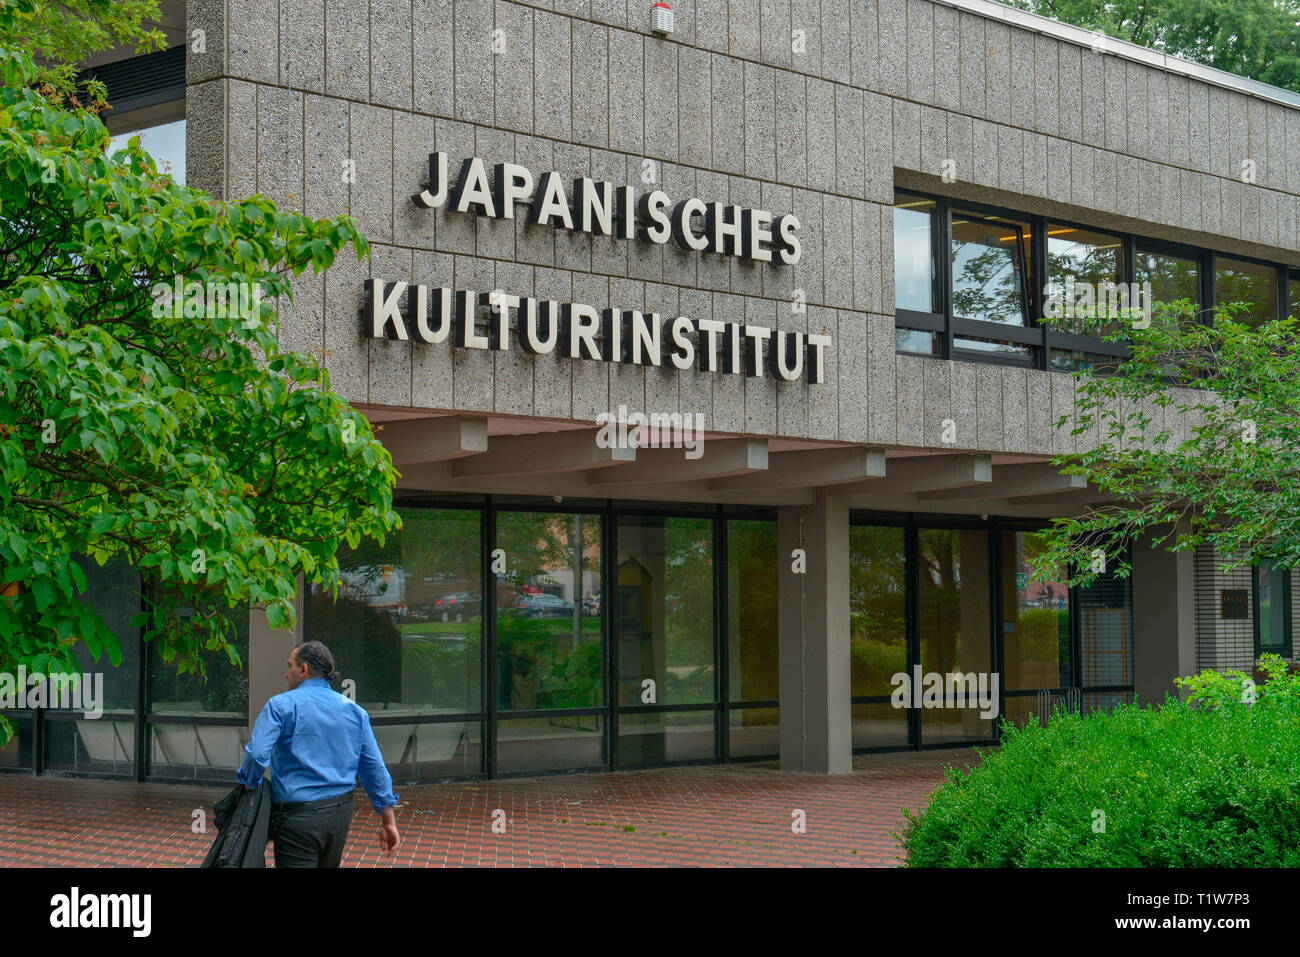 Japanisches Kulturinstitut, Universitaetsstrasse, Koeln, Nordrhein-Westfalen, Deutschland, Universitätsstrasse Stock Photo